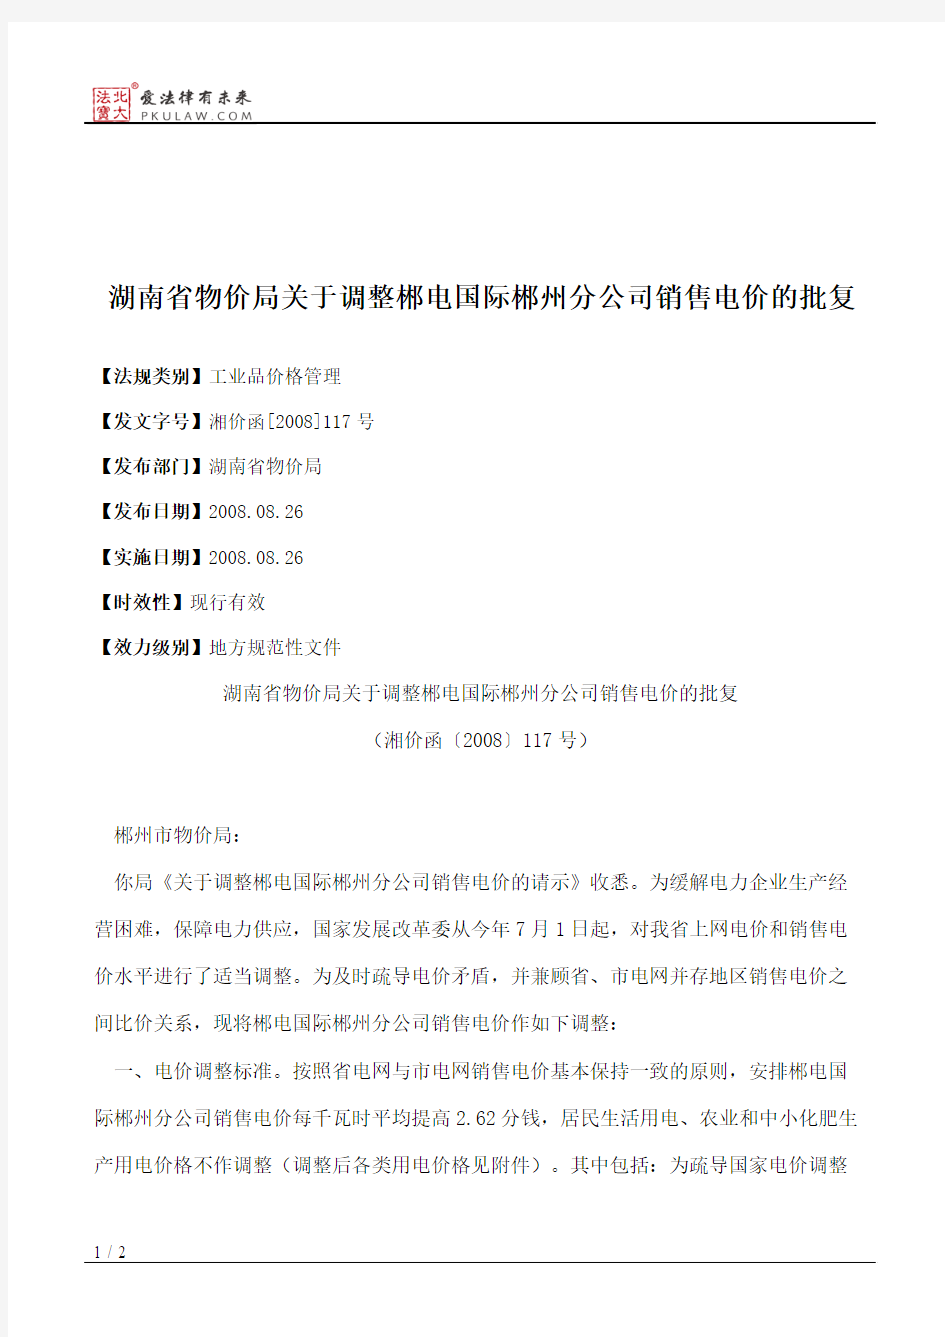 湖南省物价局关于调整郴电国际郴州分公司销售电价的批复